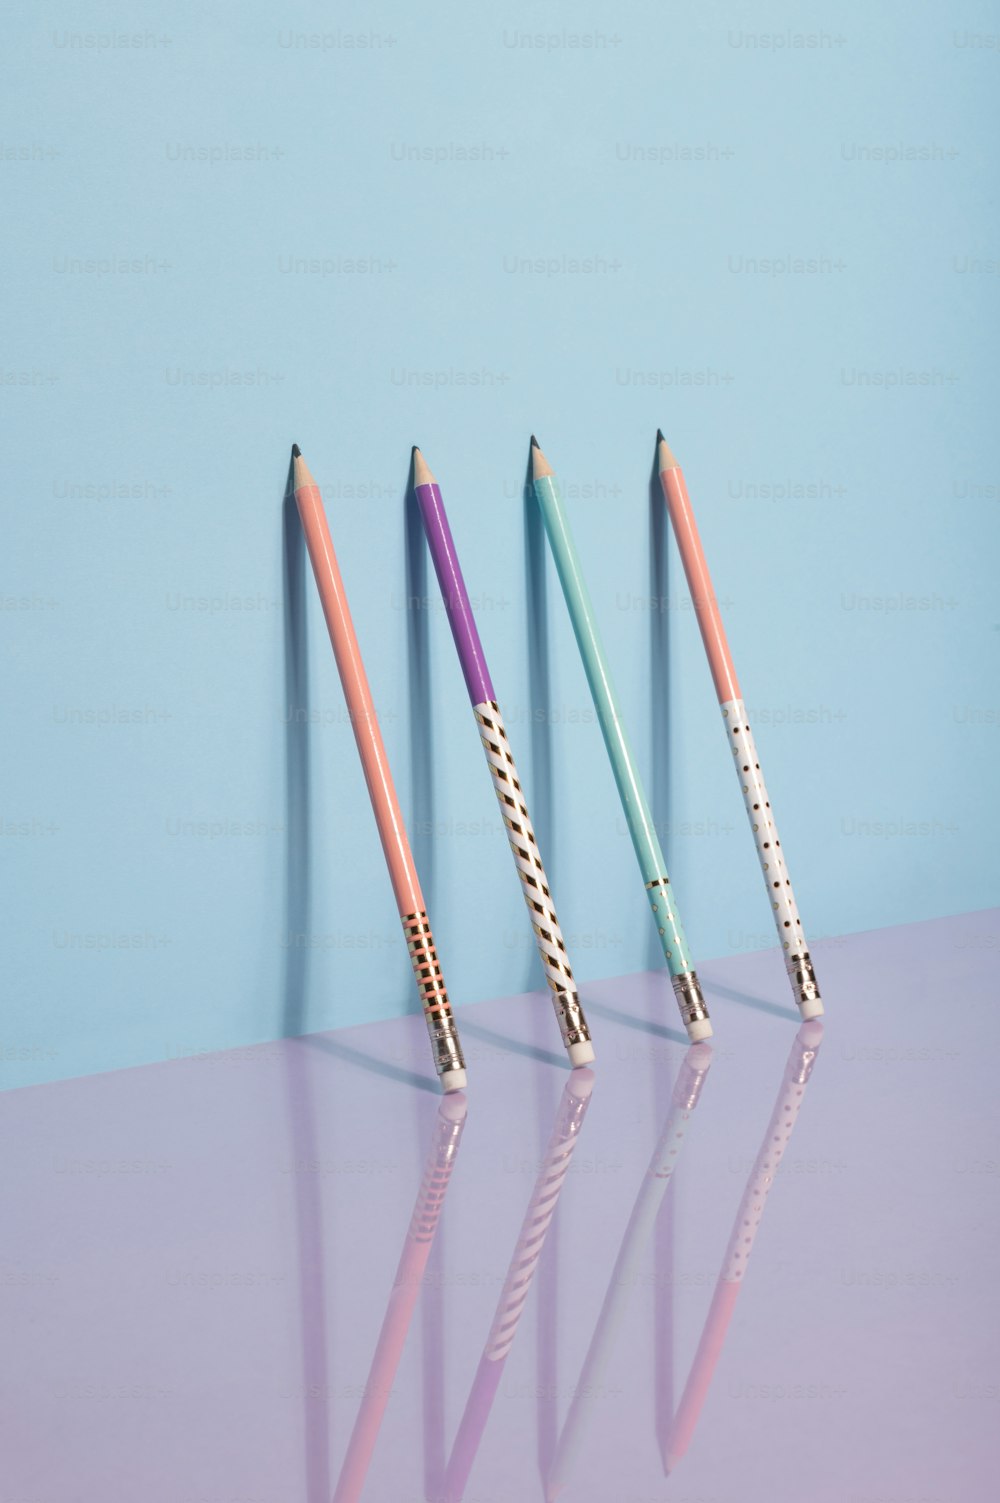 Tres lápices de diferentes colores están alineados en una fila